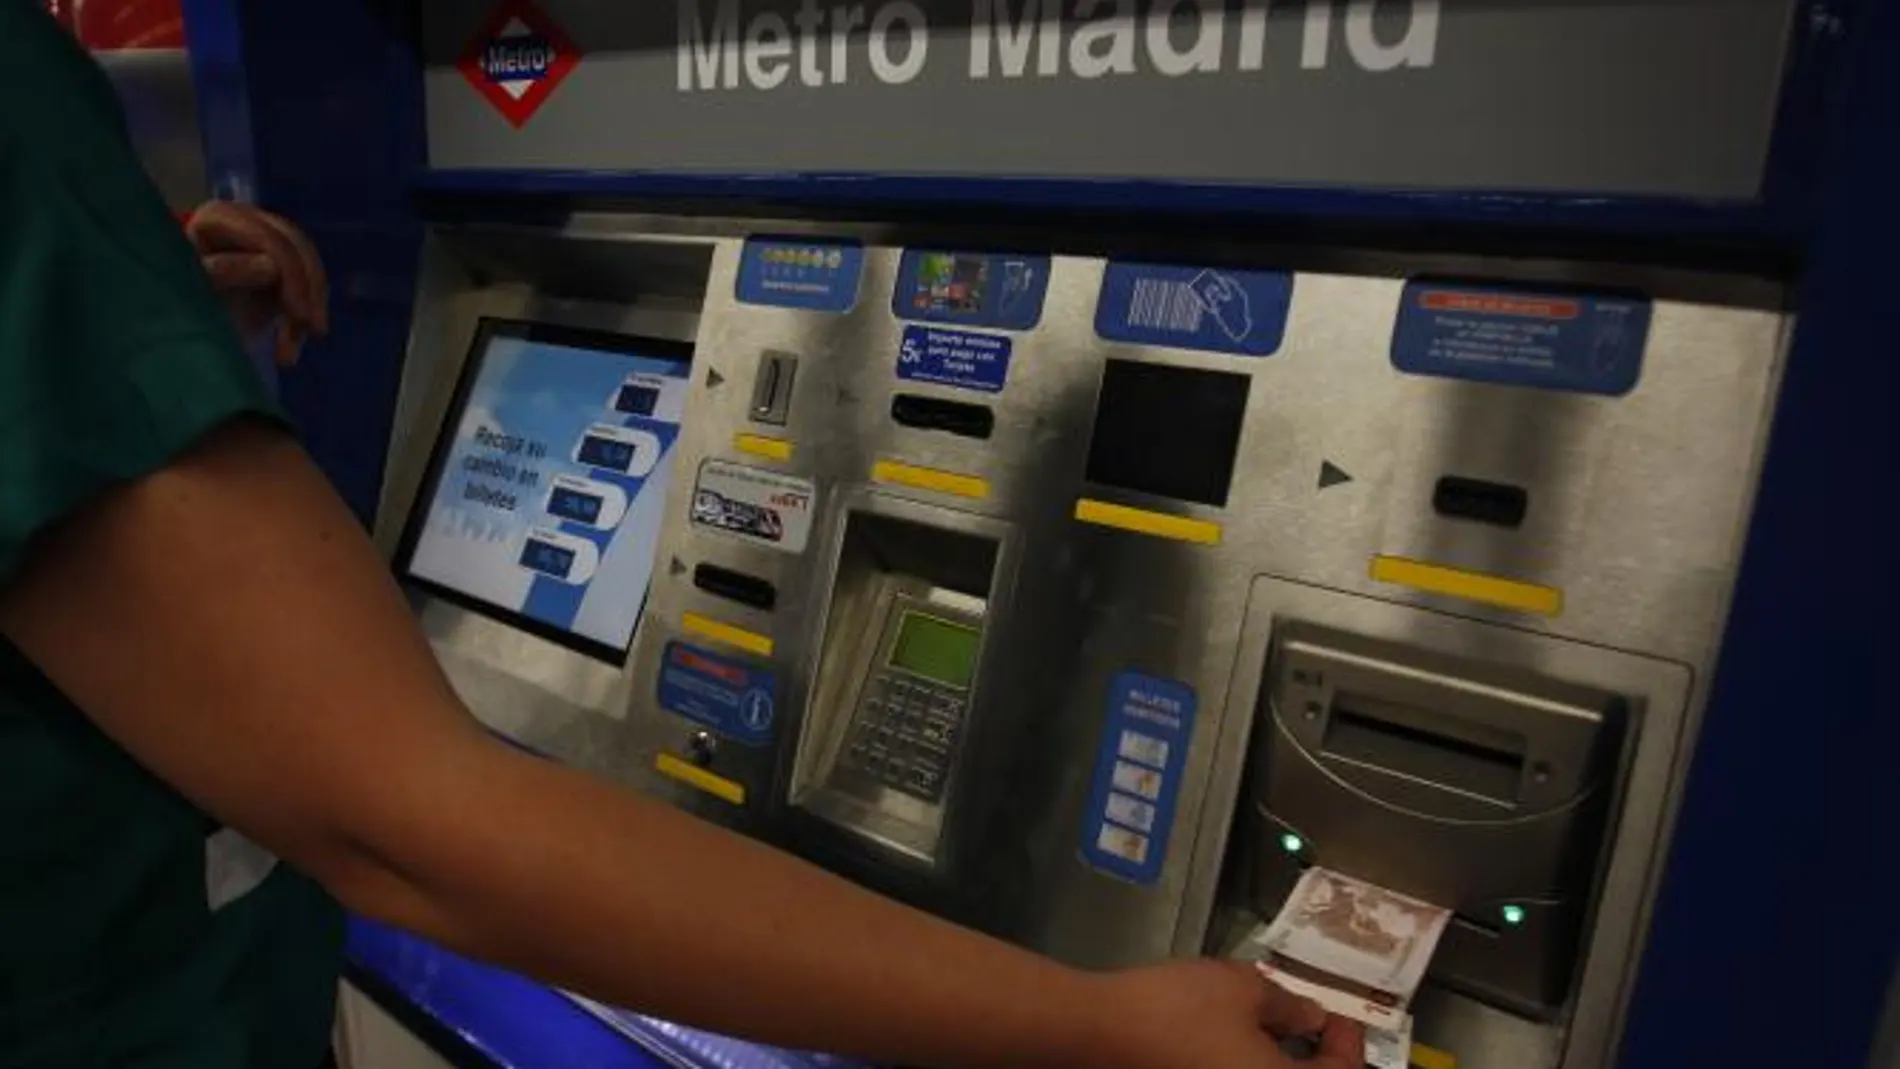 El billete sencillo de Metro, Metro Ligero y EMT pasará a costar 1,50 euros